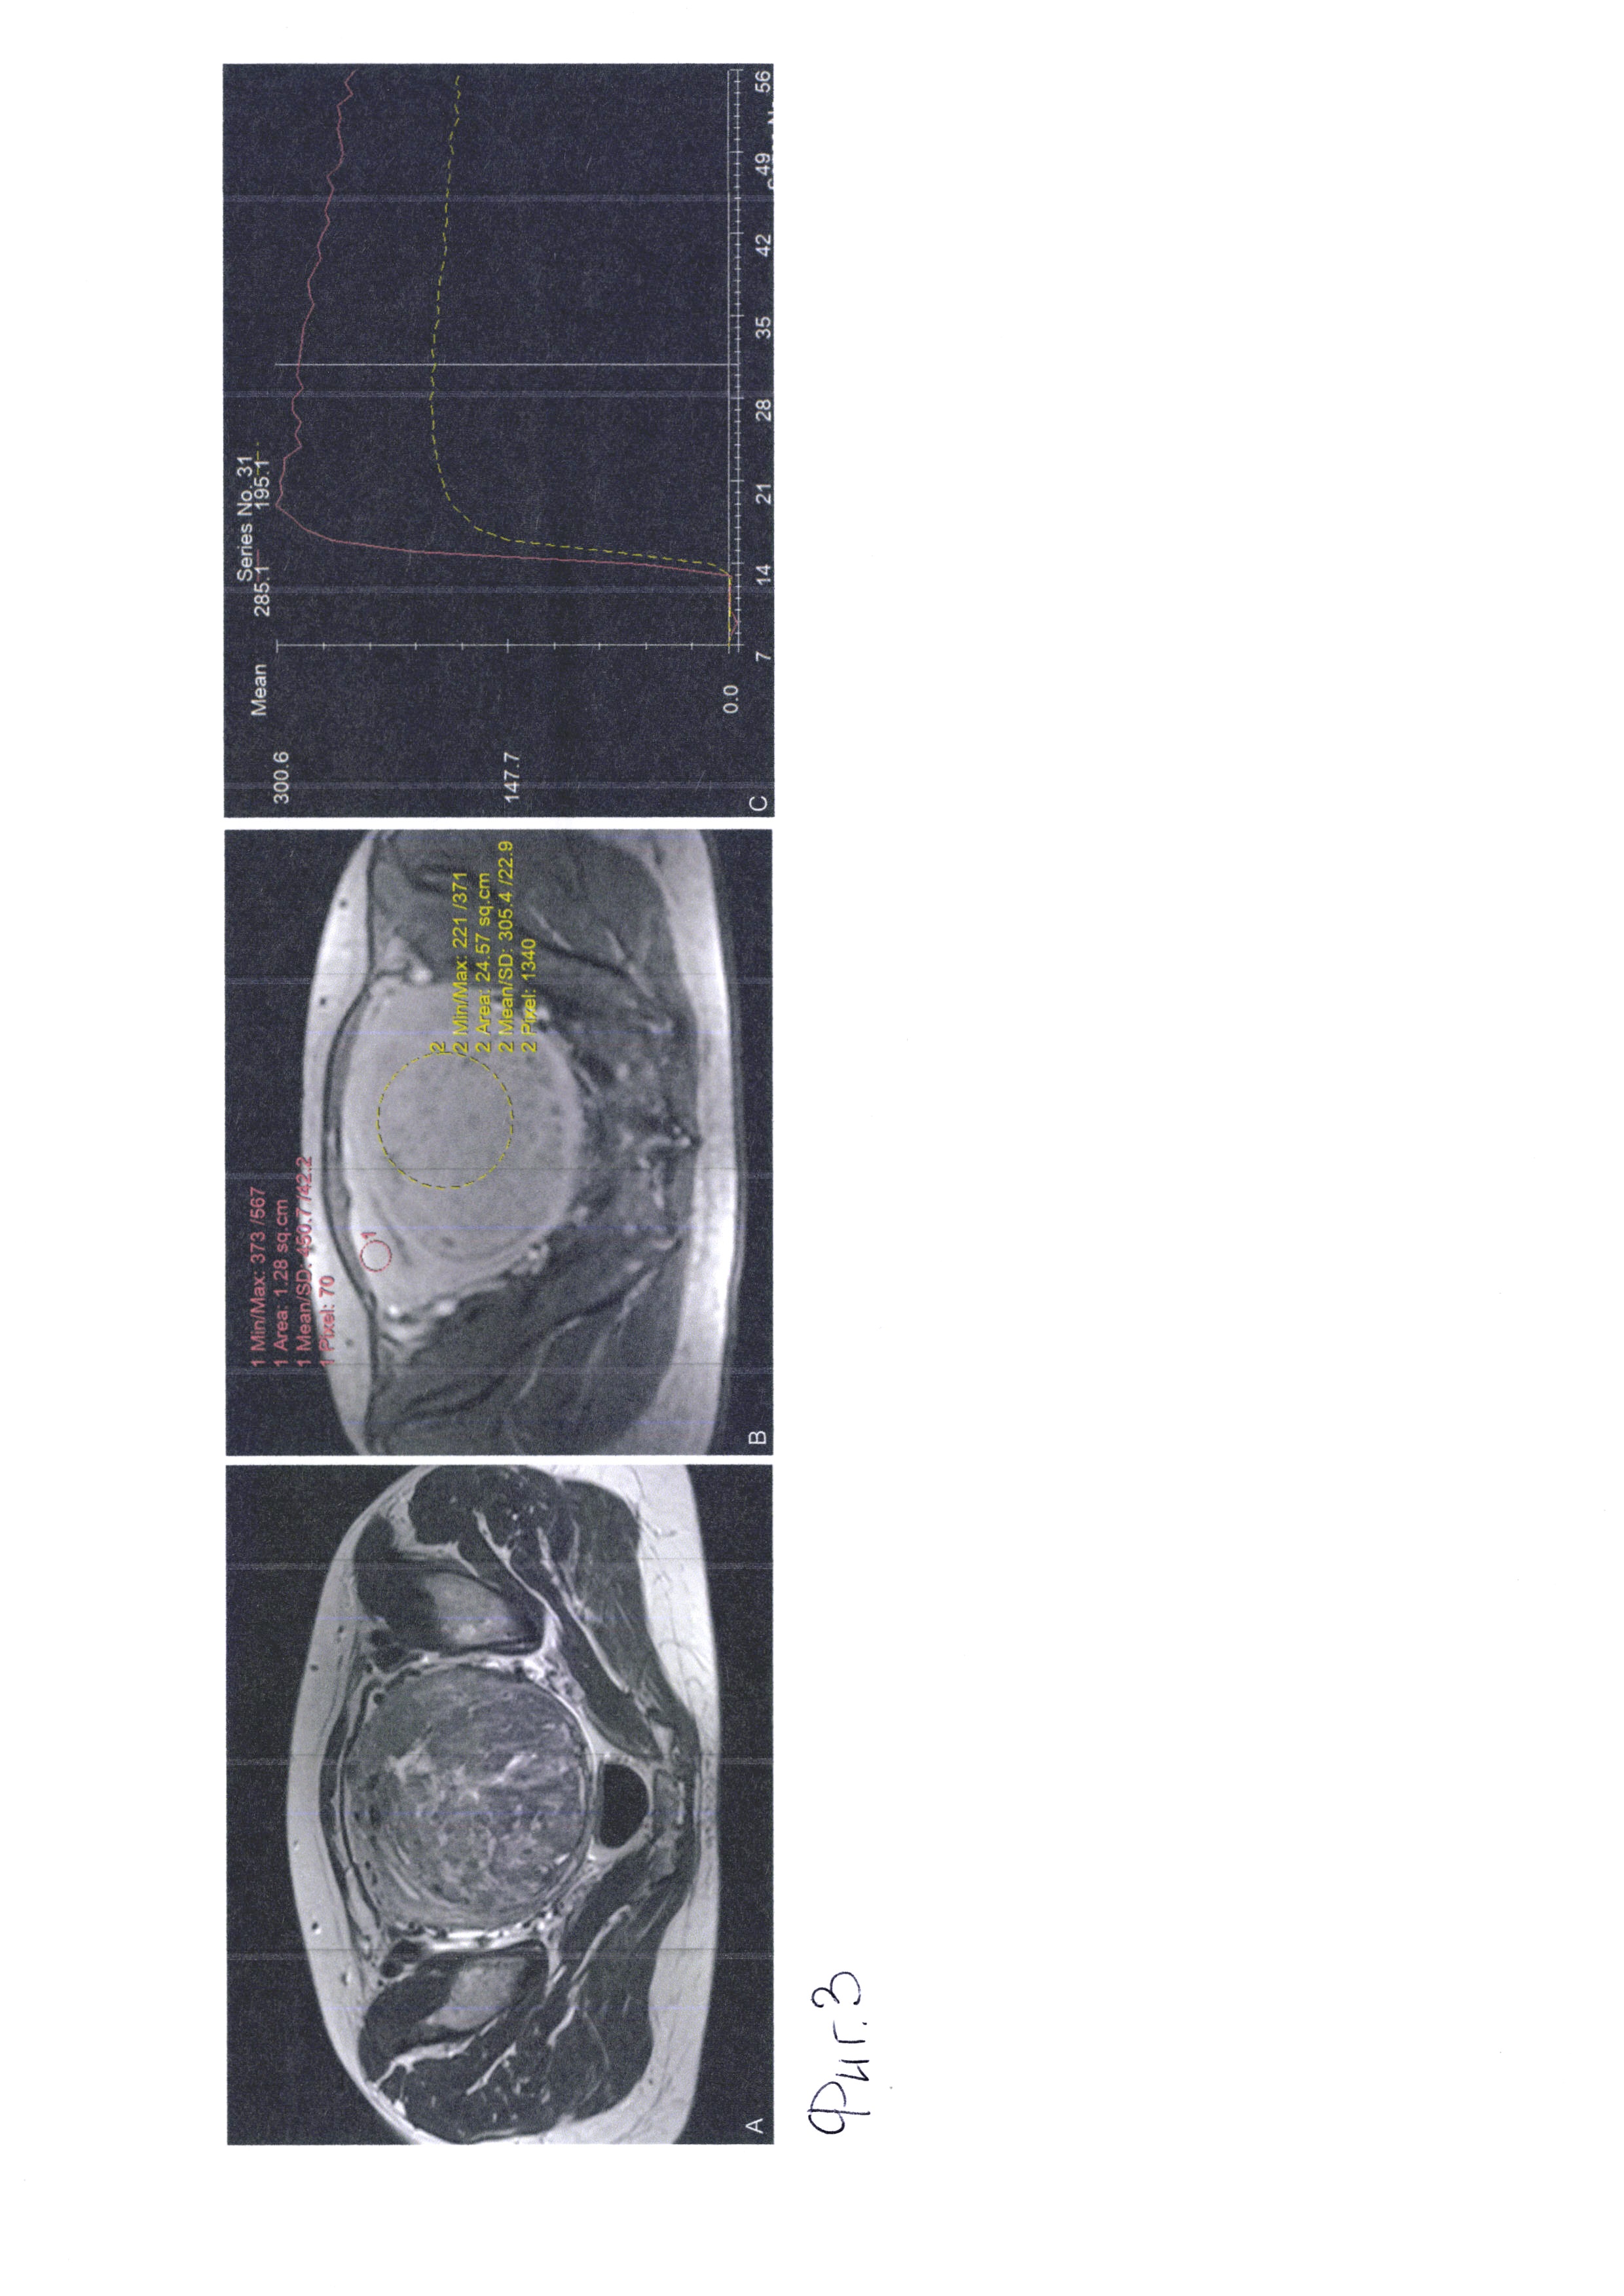 Метод динамического сканирования при мультипараметрической магнитно-резонансной томографии с использованием парамагнитного контрастного агента для определения параметров кровотока в ткани матки при миоме и аденомиозе